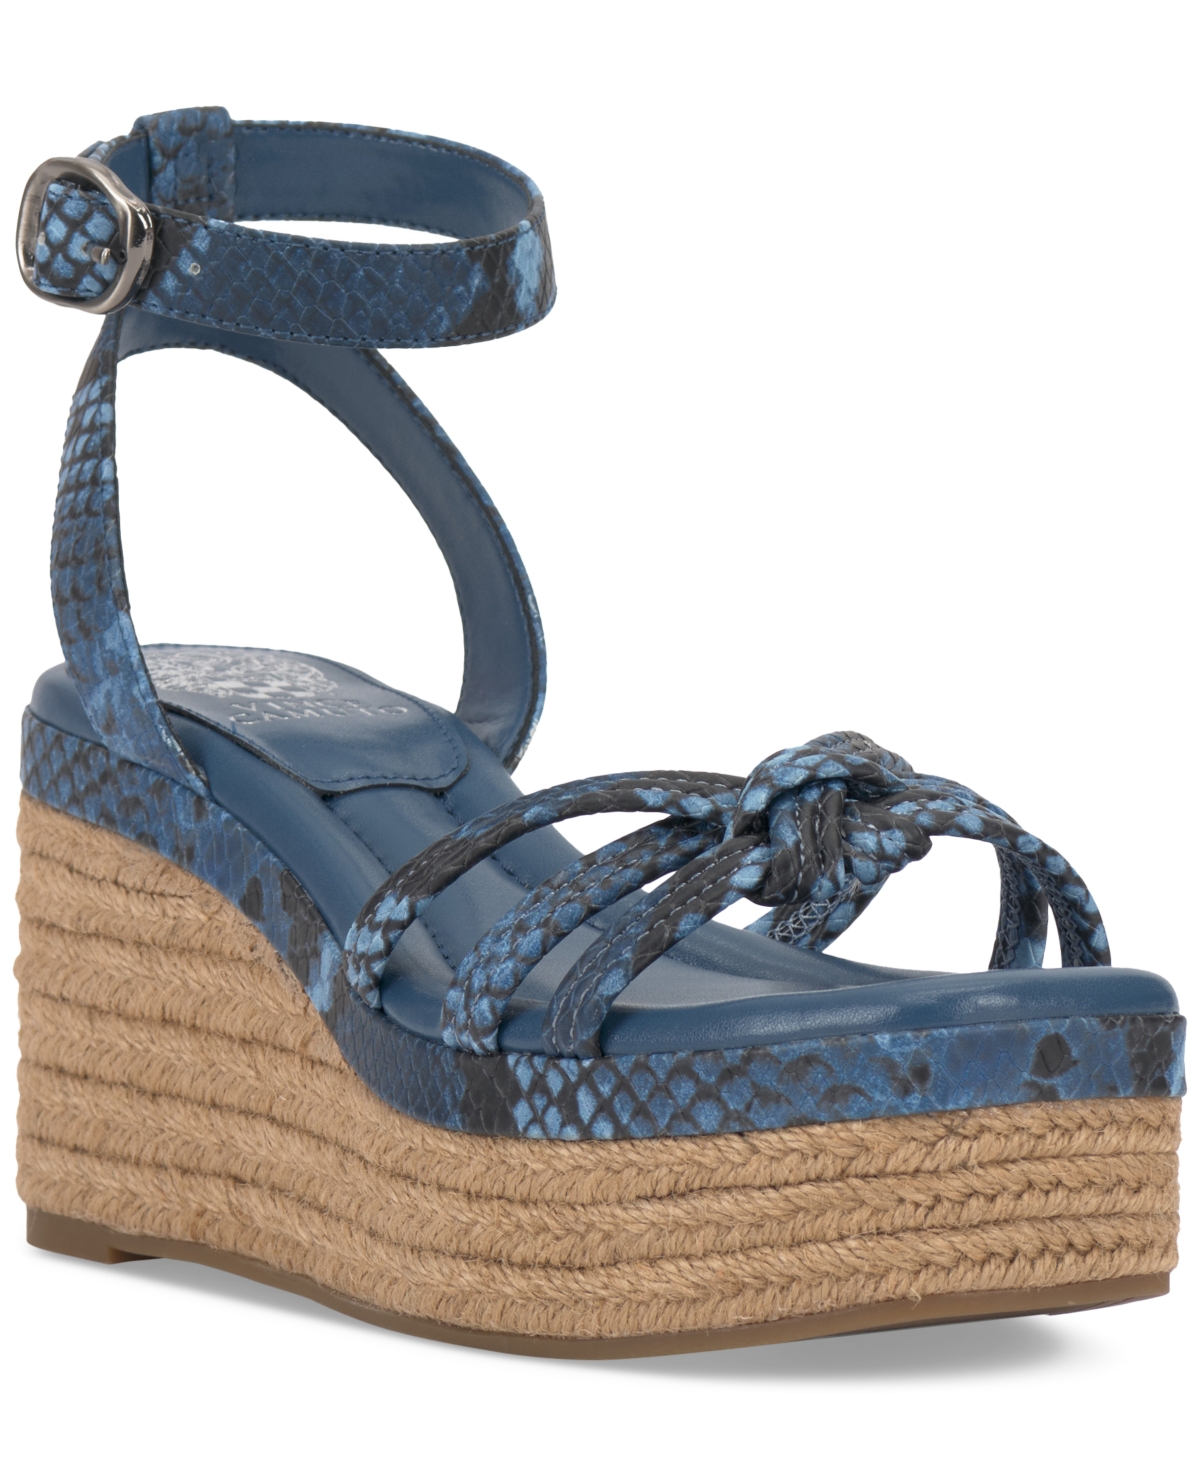 Women's Loressa Strappy Platform Wedge Sandals - Light Elemental Blue Multi